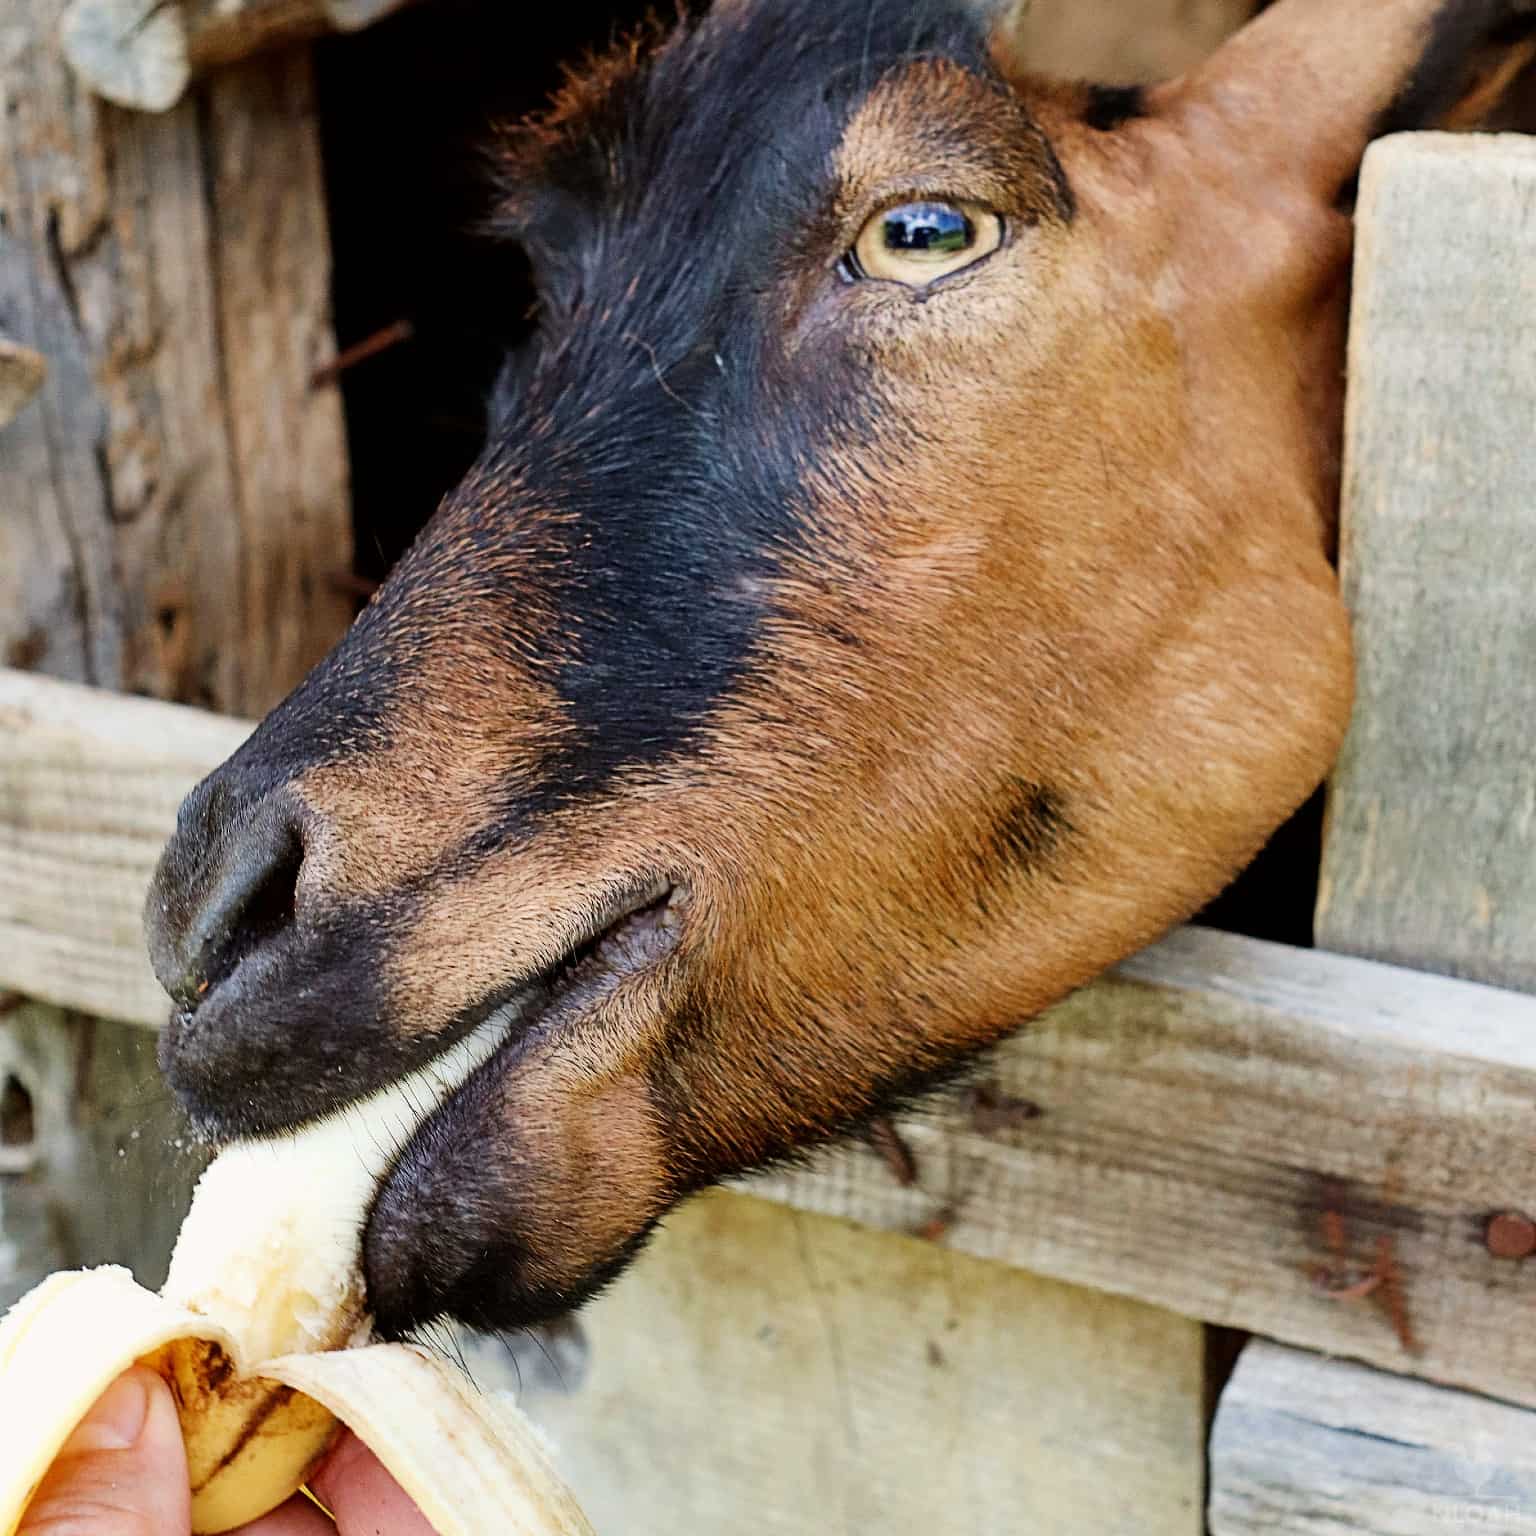 a goat eating a banana